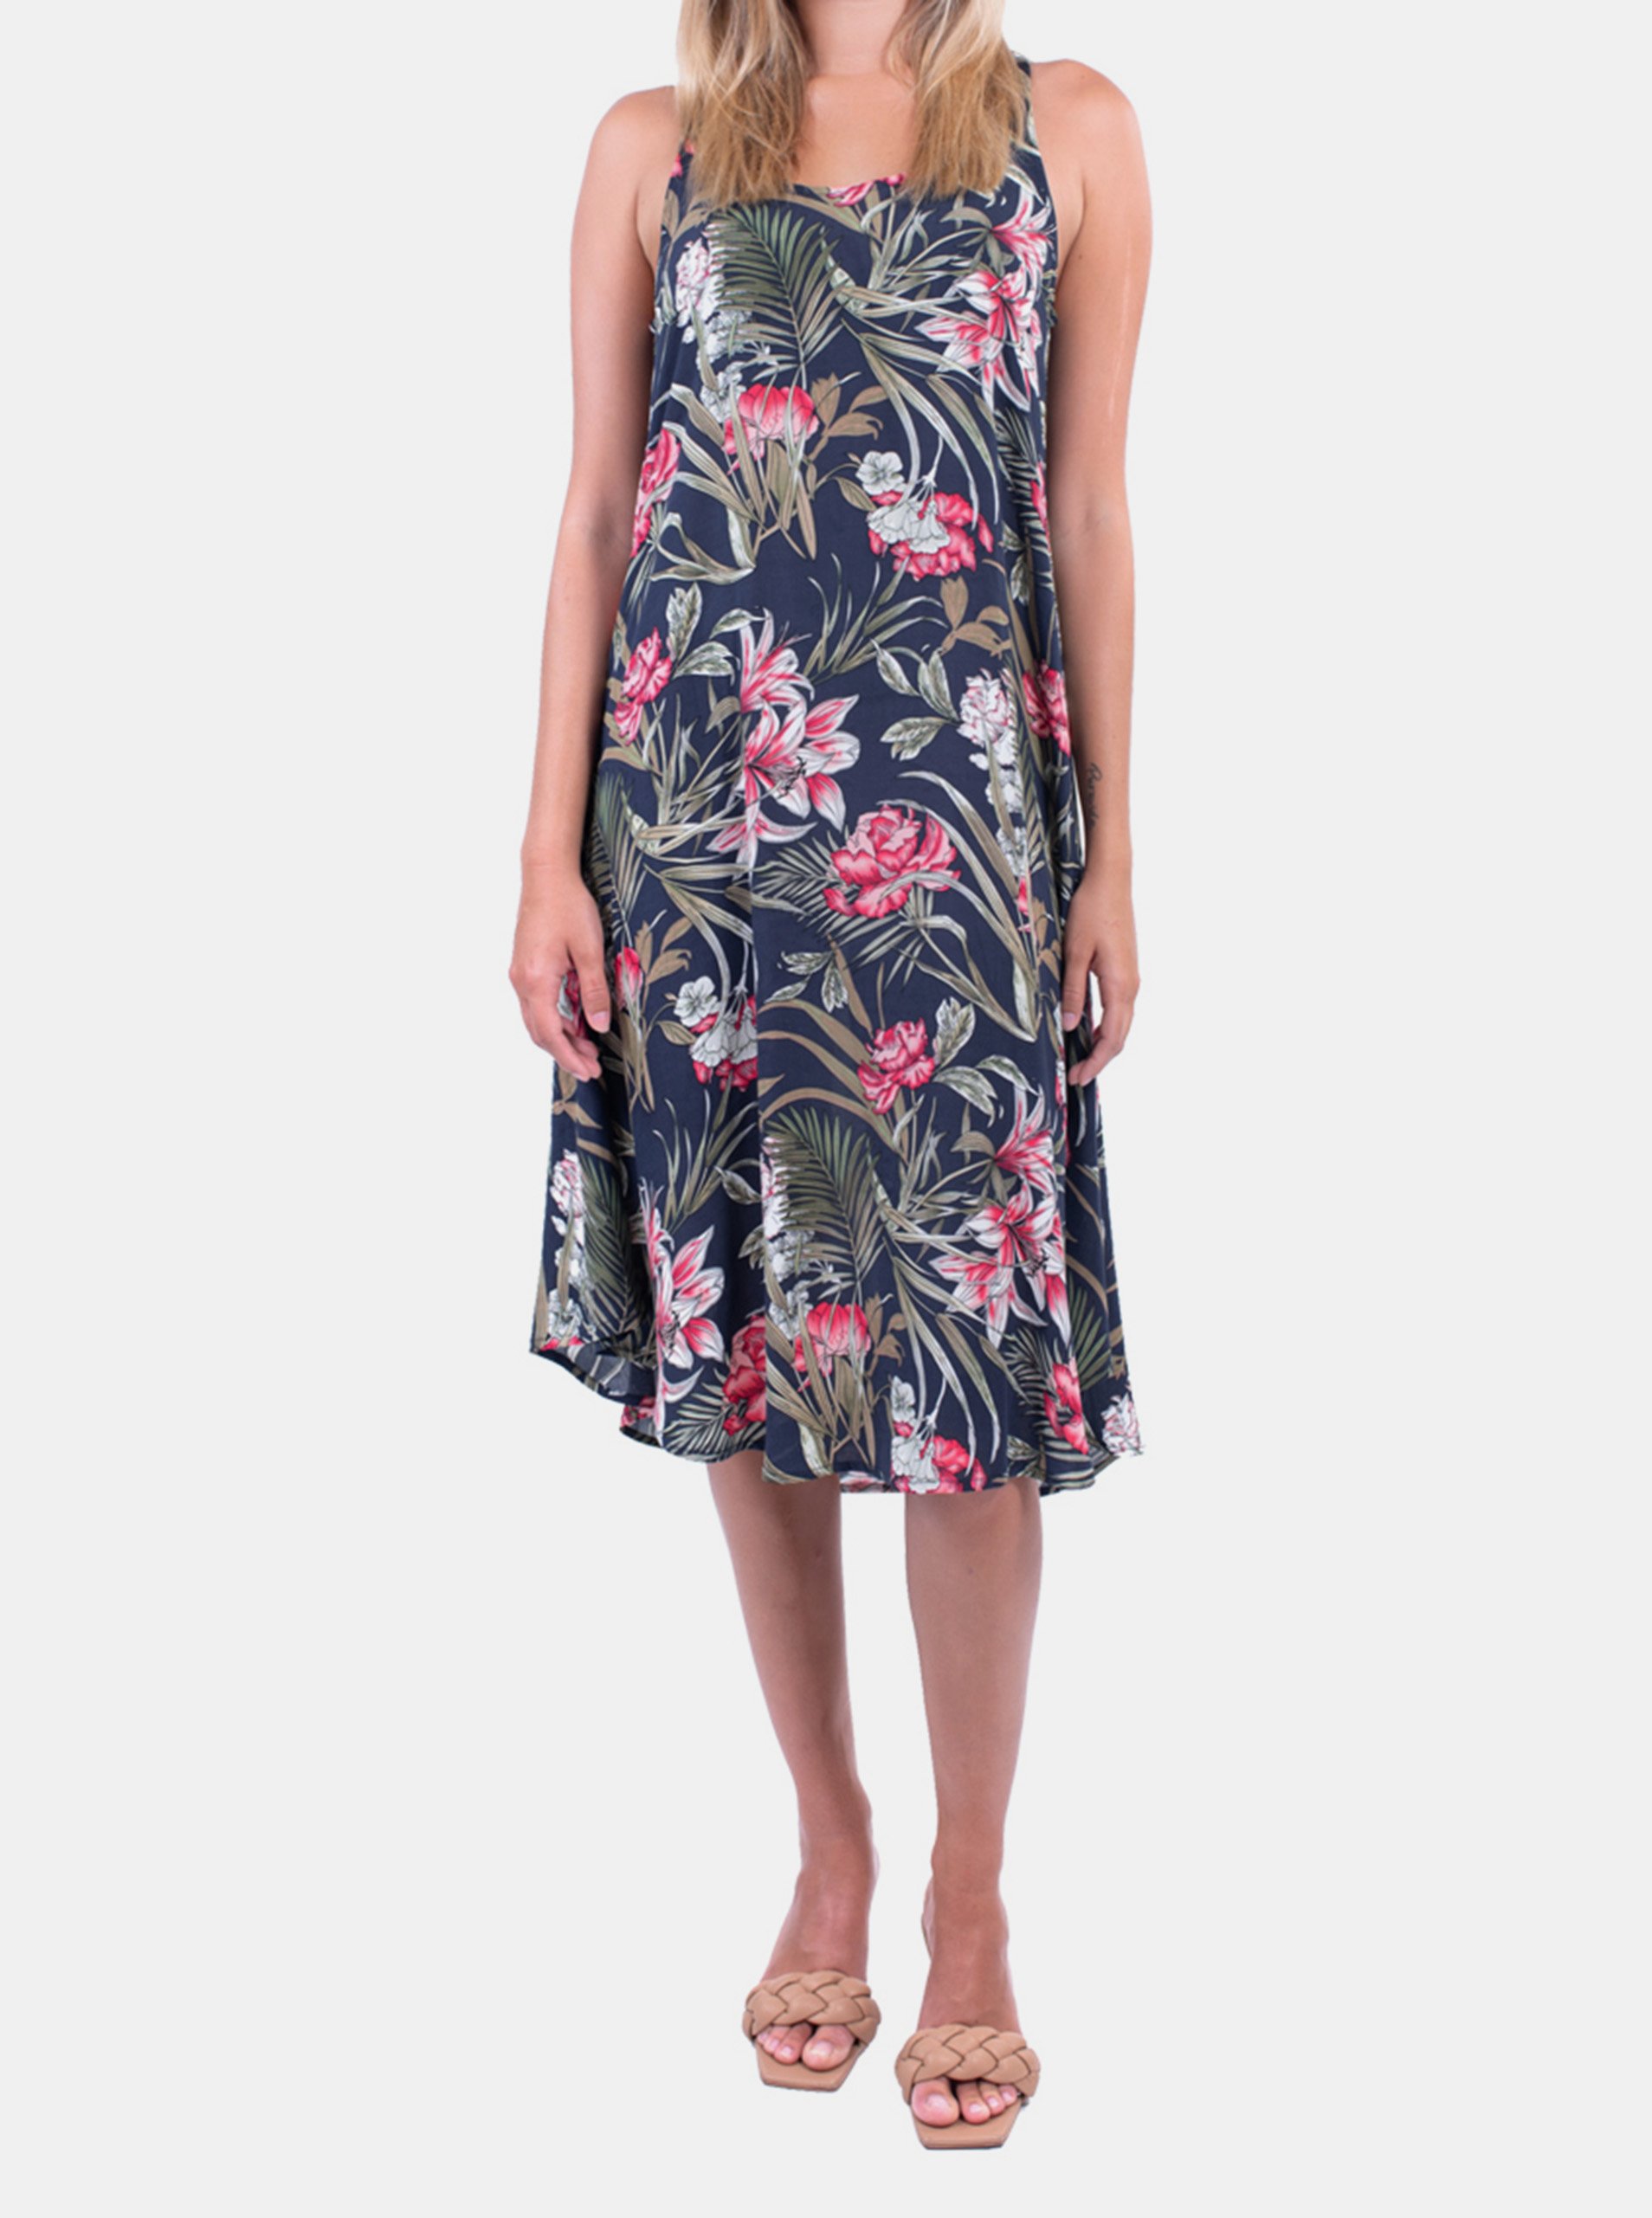 E-shop Tmavomodré vzorované šaty Culito from Spain